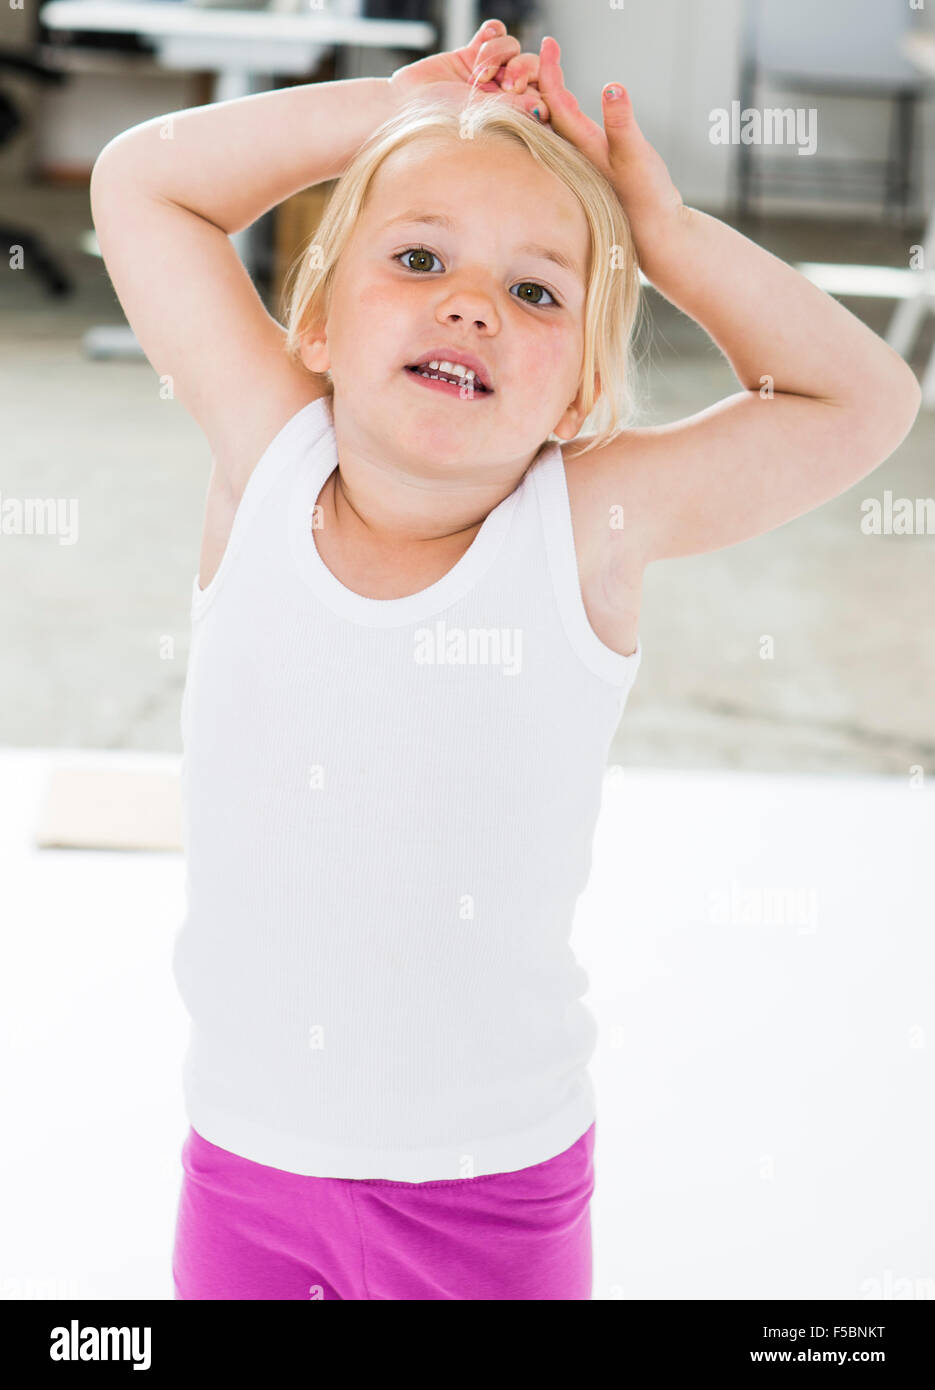 Cuatro años de edad, niña de pie con las manos y los brazos por encima de su cabeza, mirando a la cámara. Foto de stock